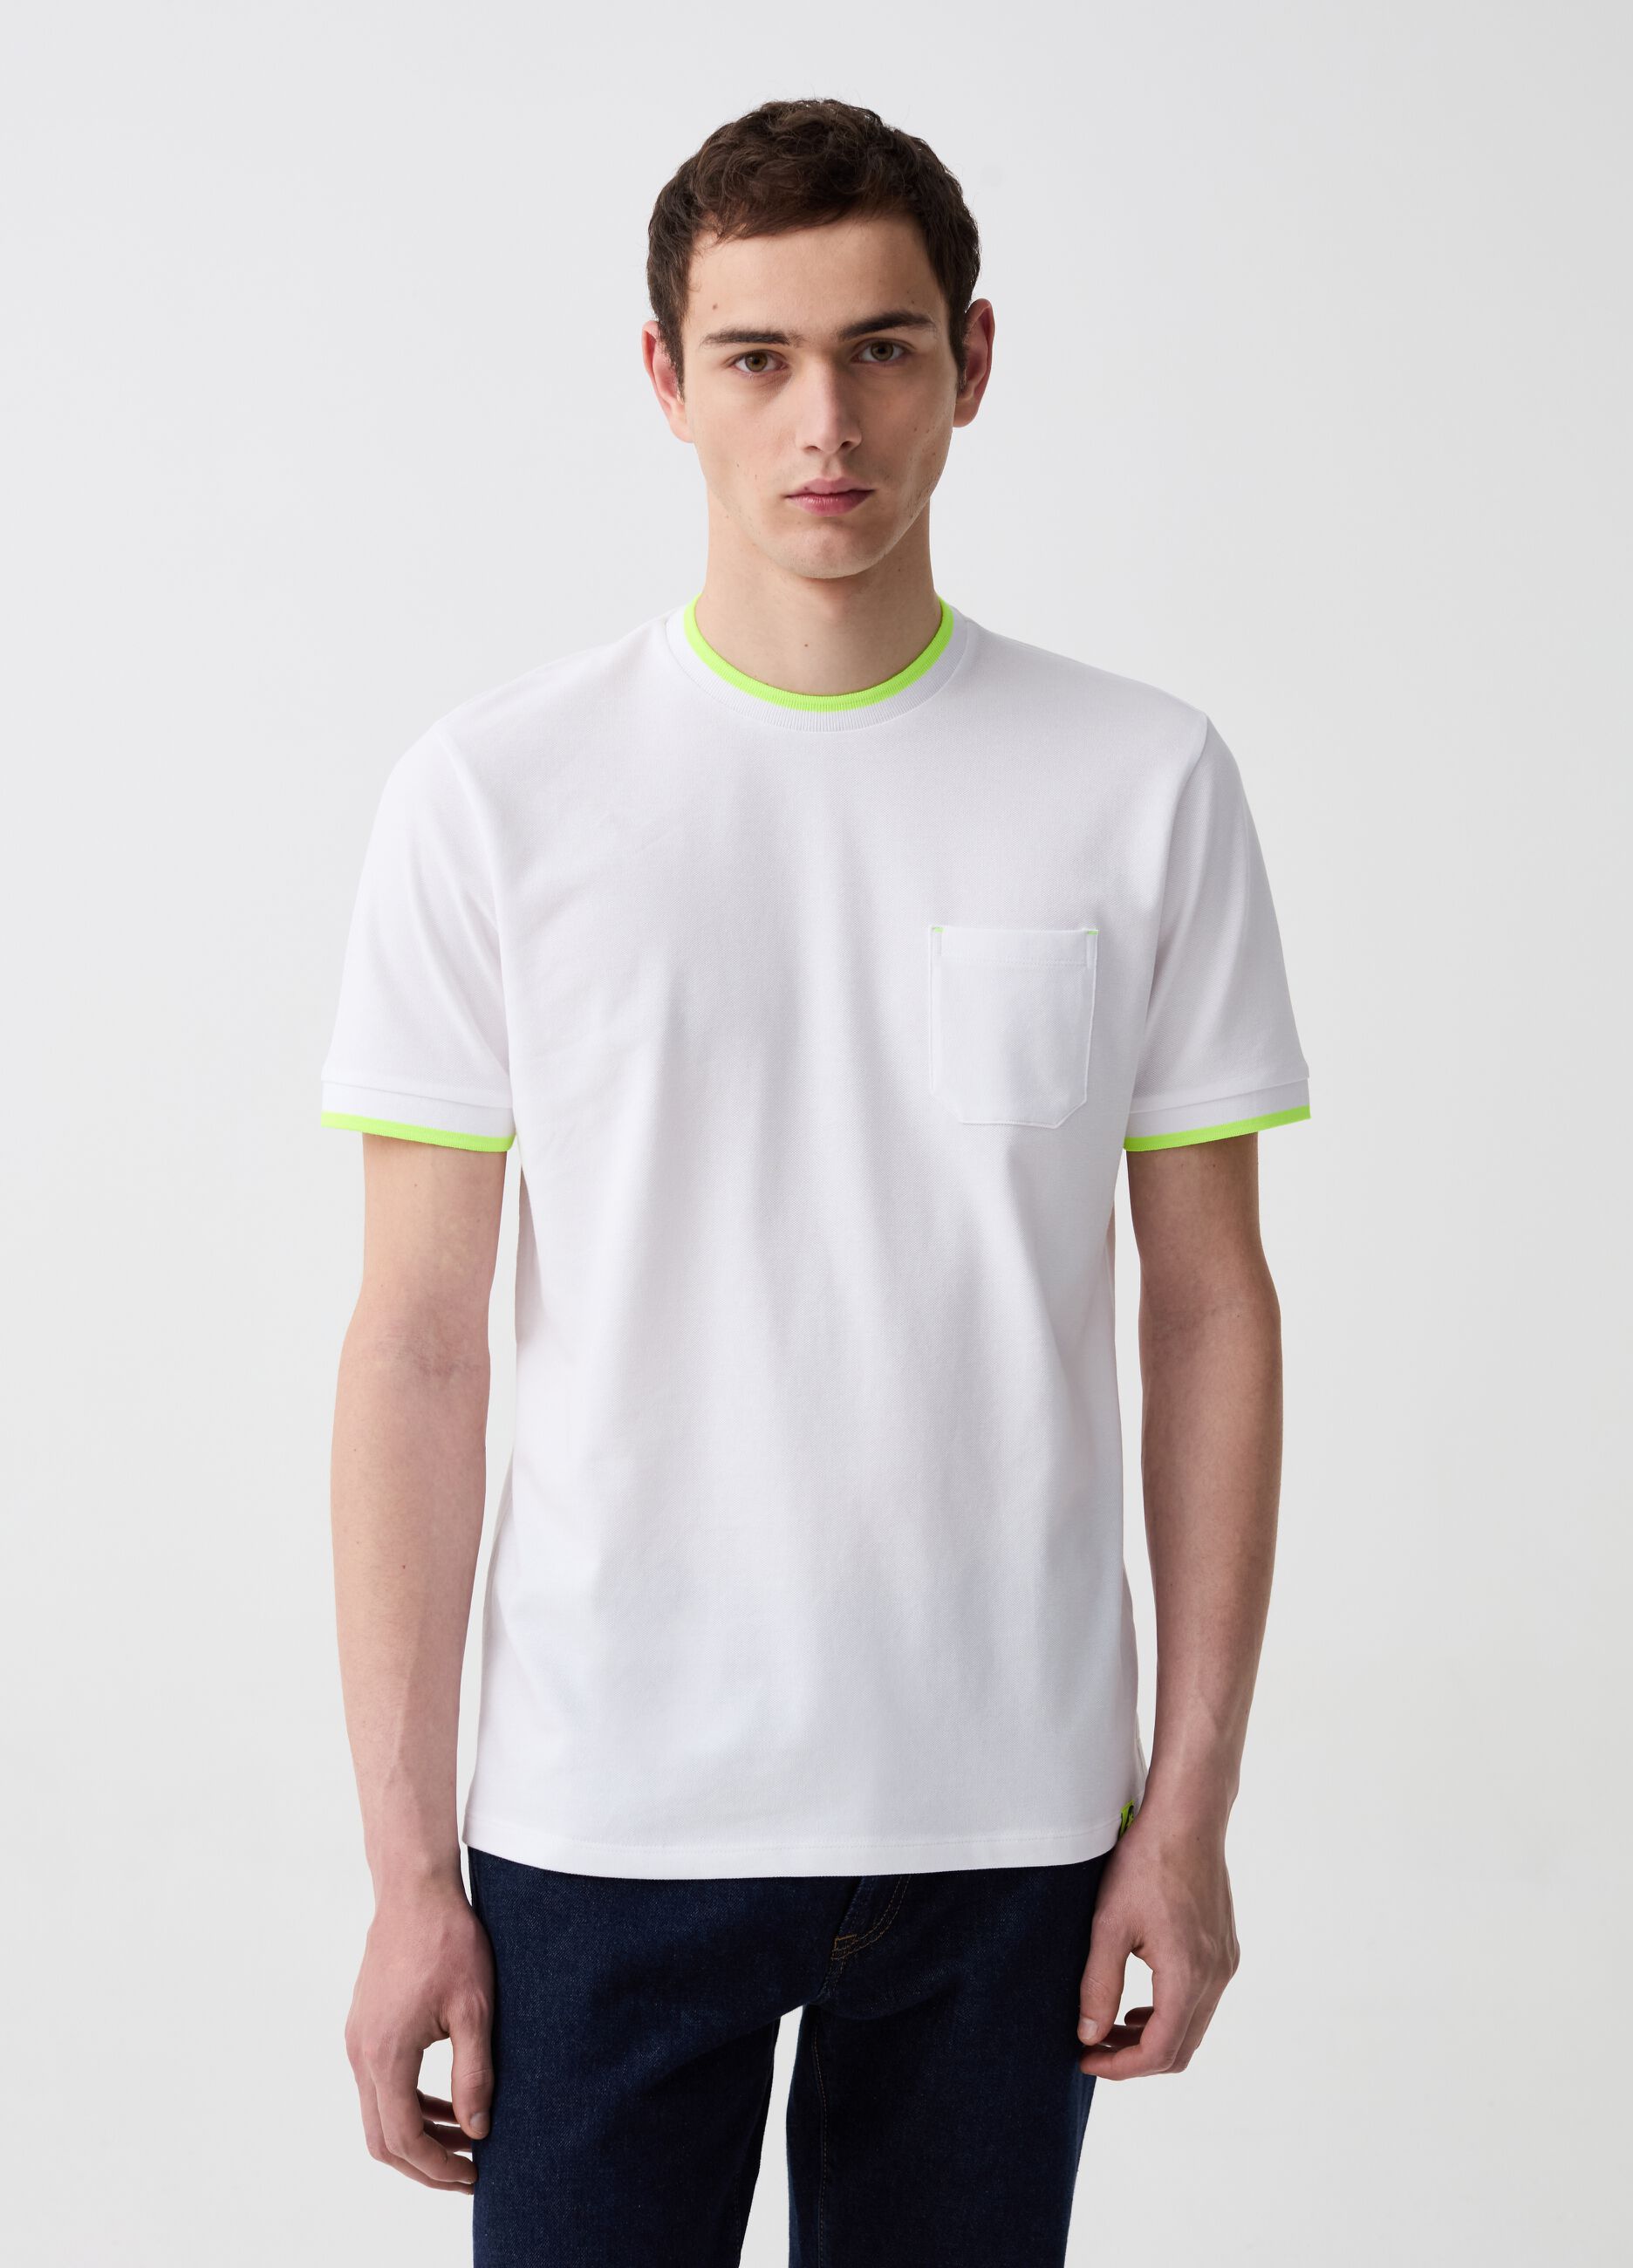 Piquet T-shirt with fluorescent details